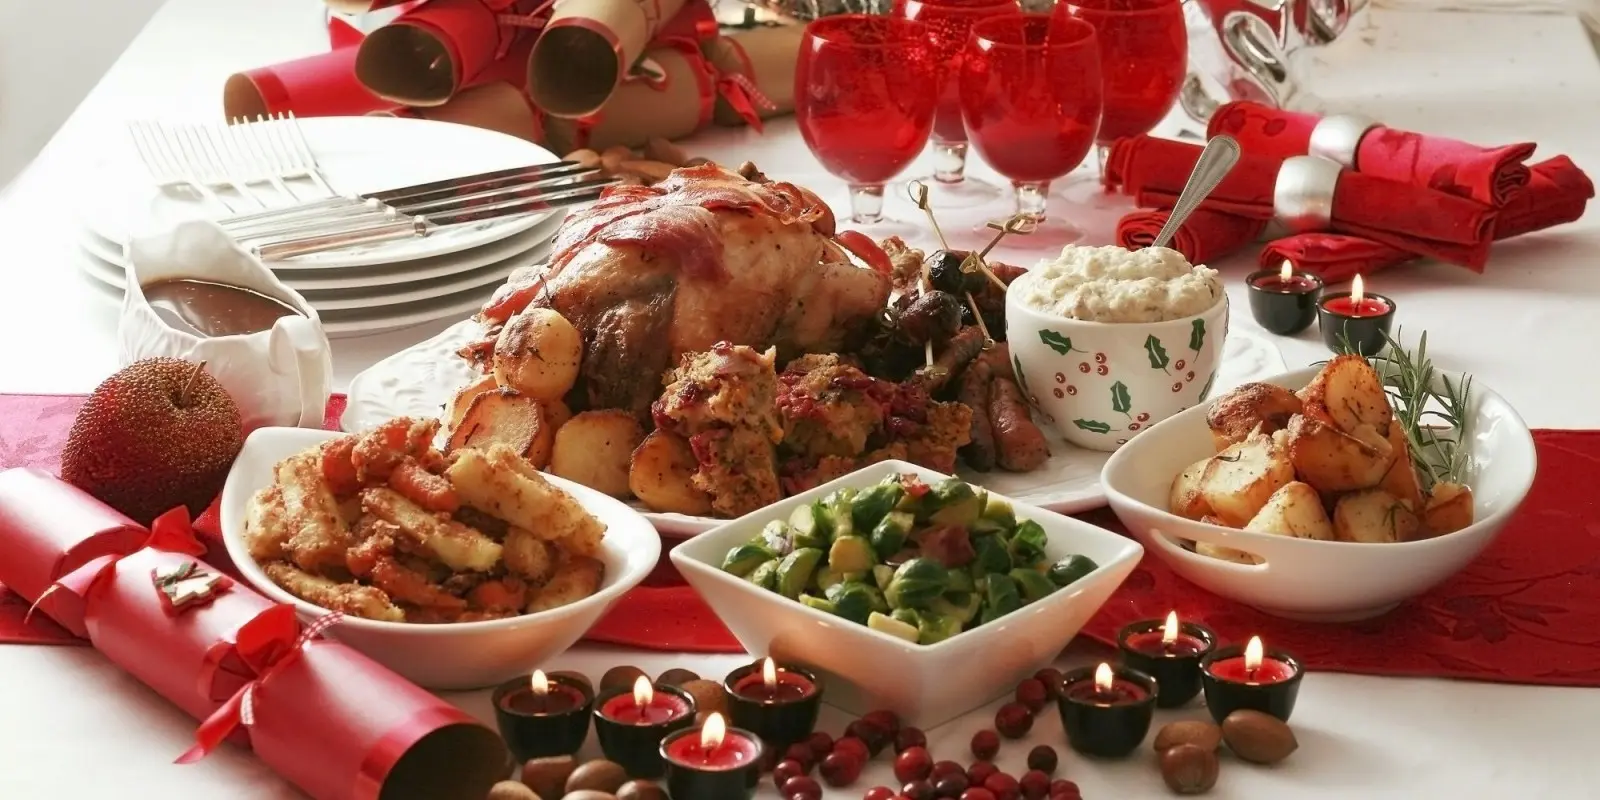 Αυτές είναι οι 5 τροφές που πρέπει να αποφύγουμε στο χριστουγεννιάτικο τραπέζι